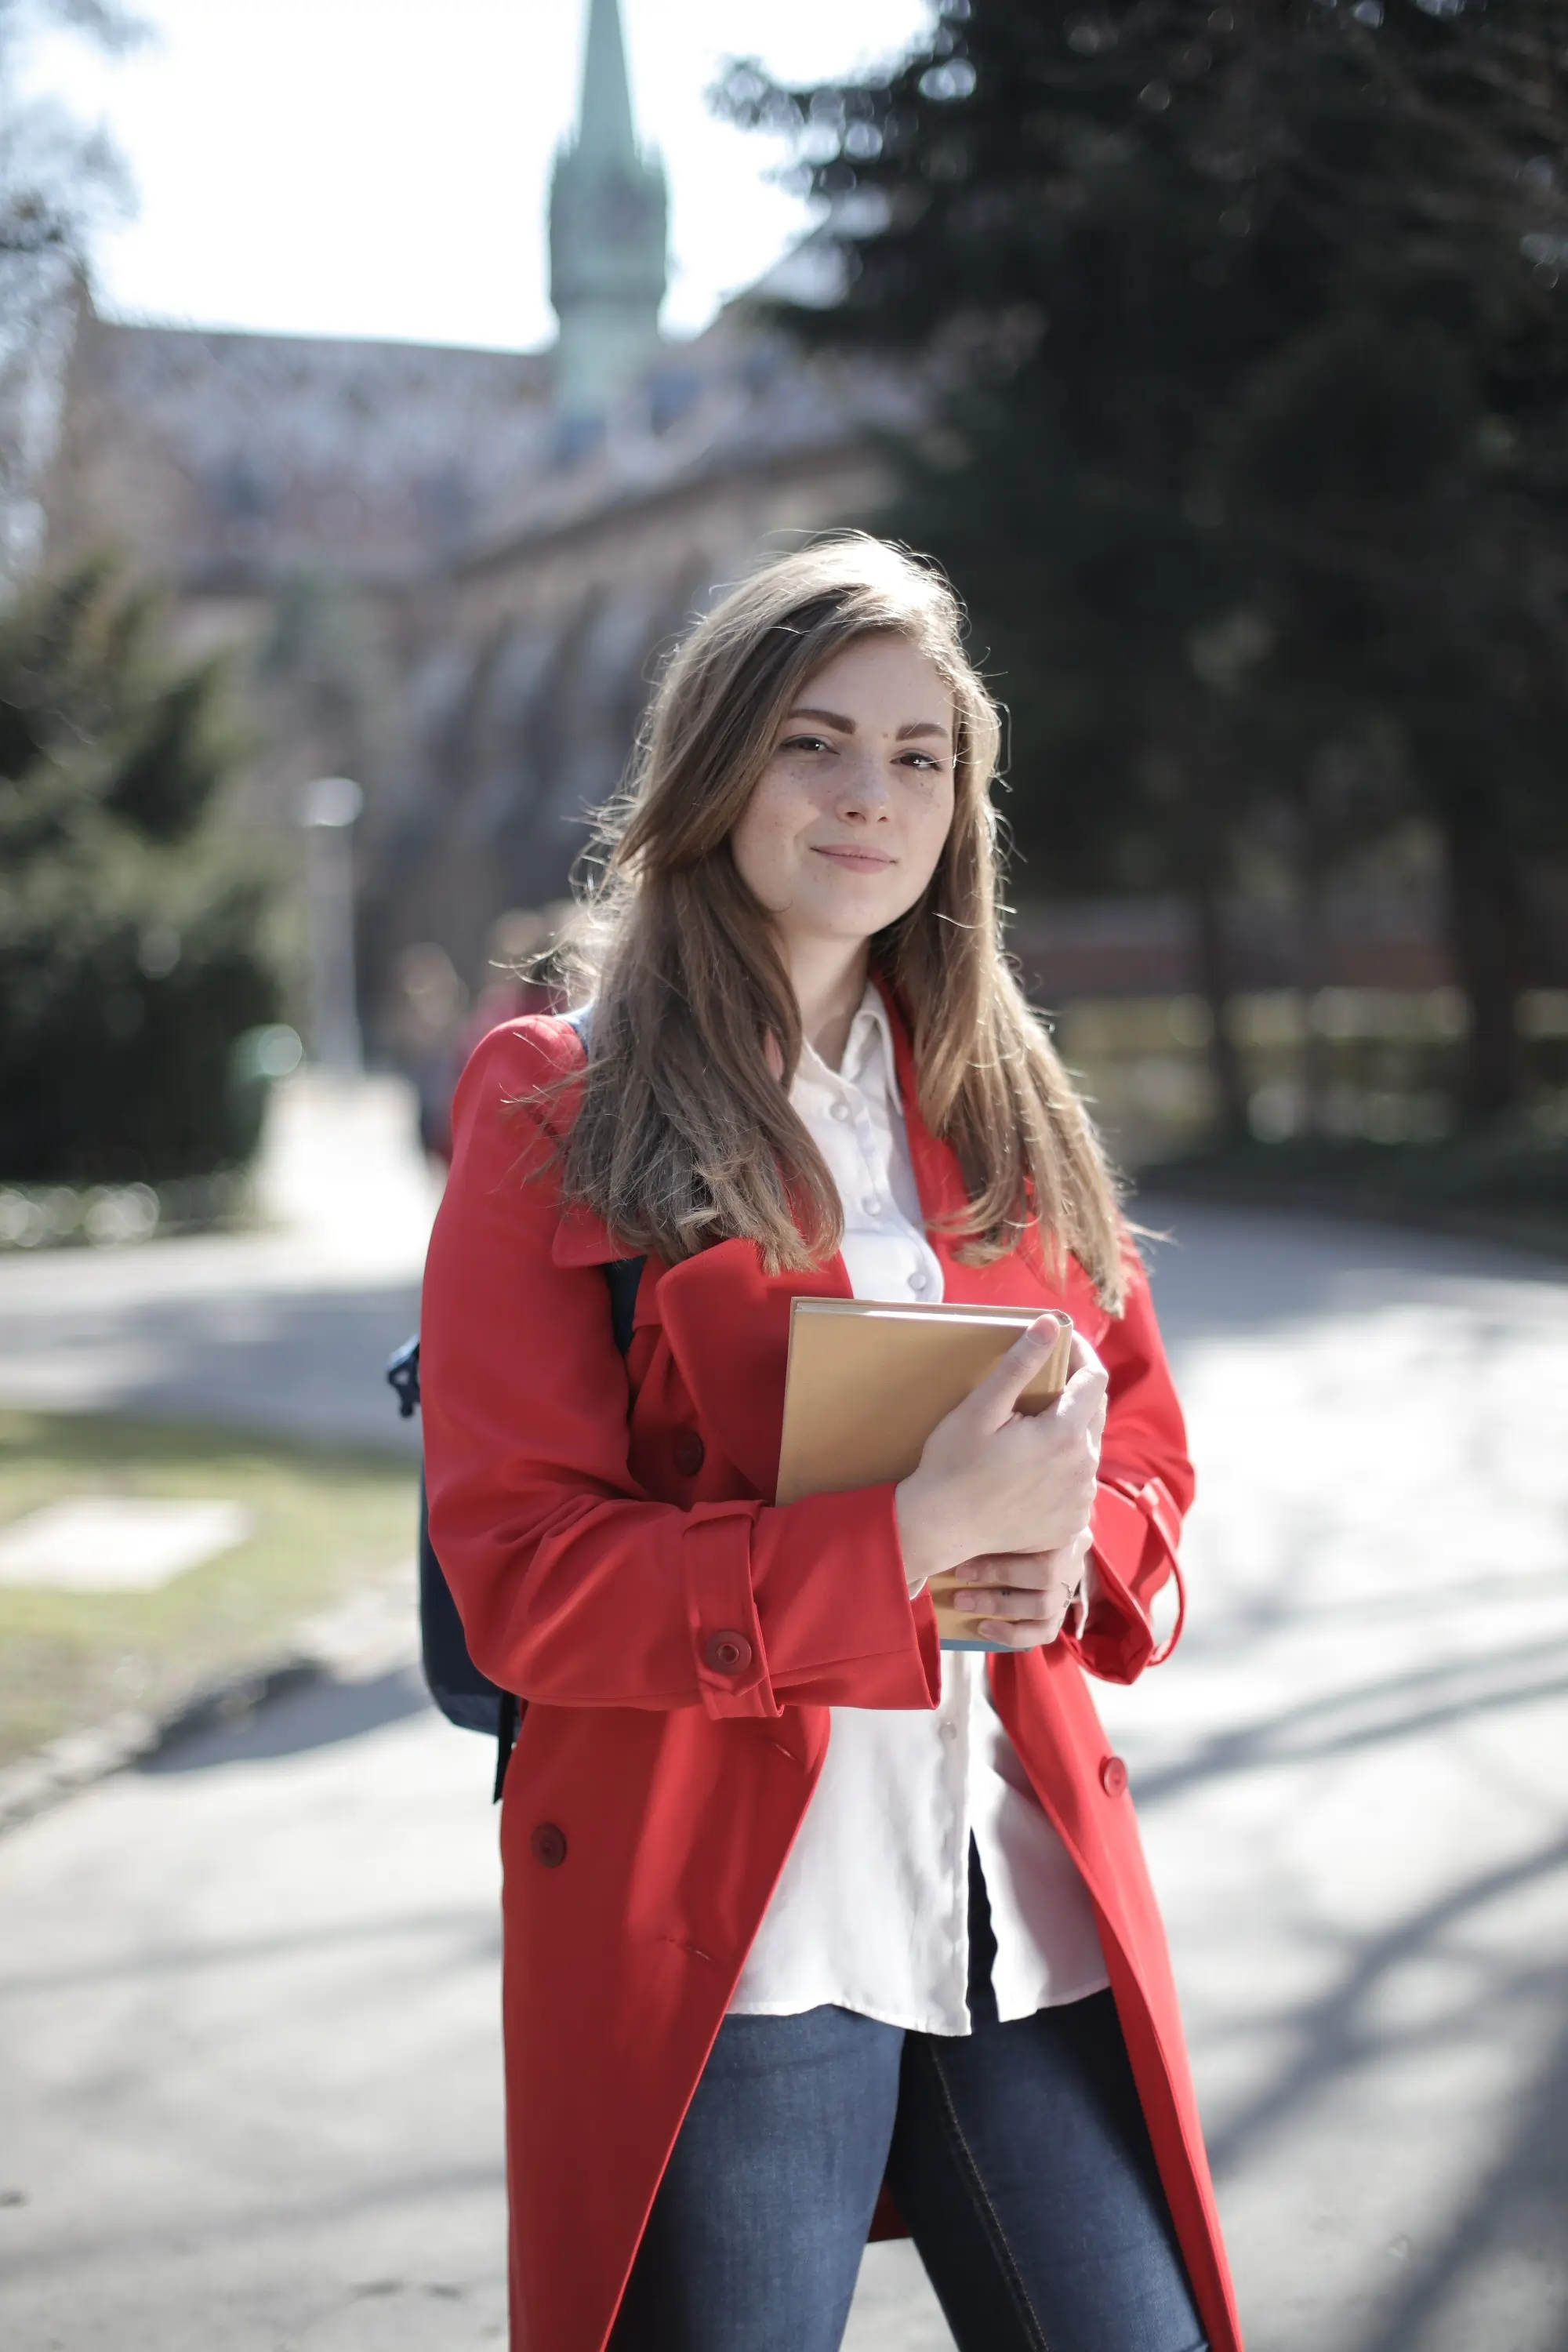 Student Escort in red coat